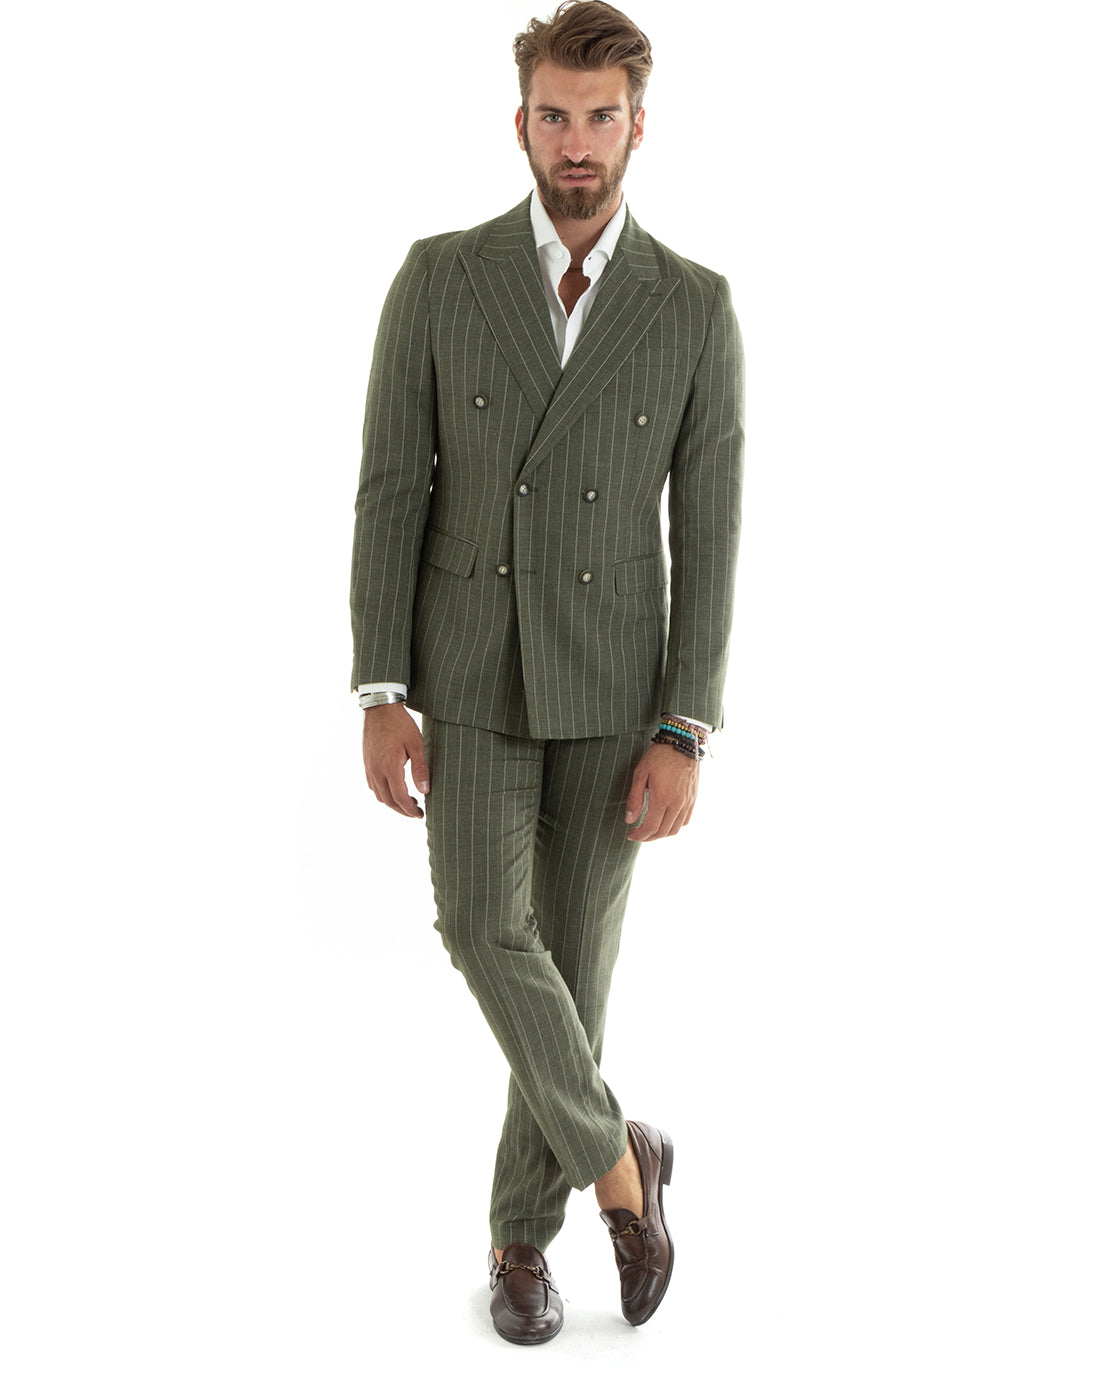 Abito Uomo Doppiopetto Vestito Completo Giacca Pantaloni Verde Gessato Elegante Casual GIOSAL-OU2405A